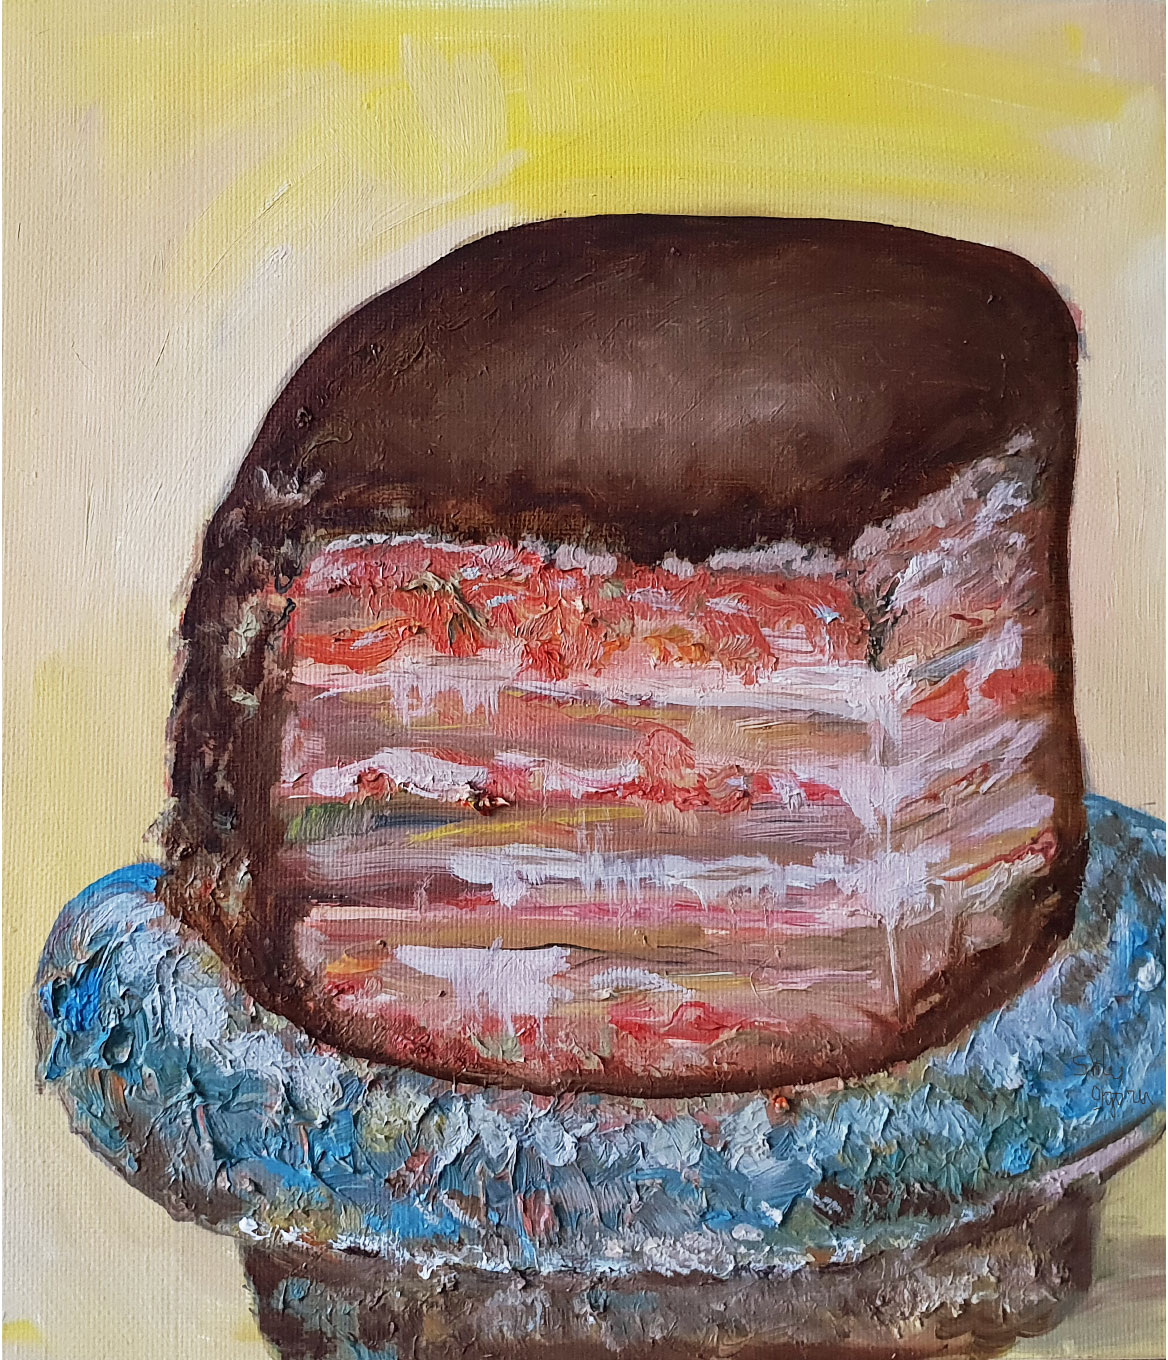 Piece Of Chocolate Cake (2018)